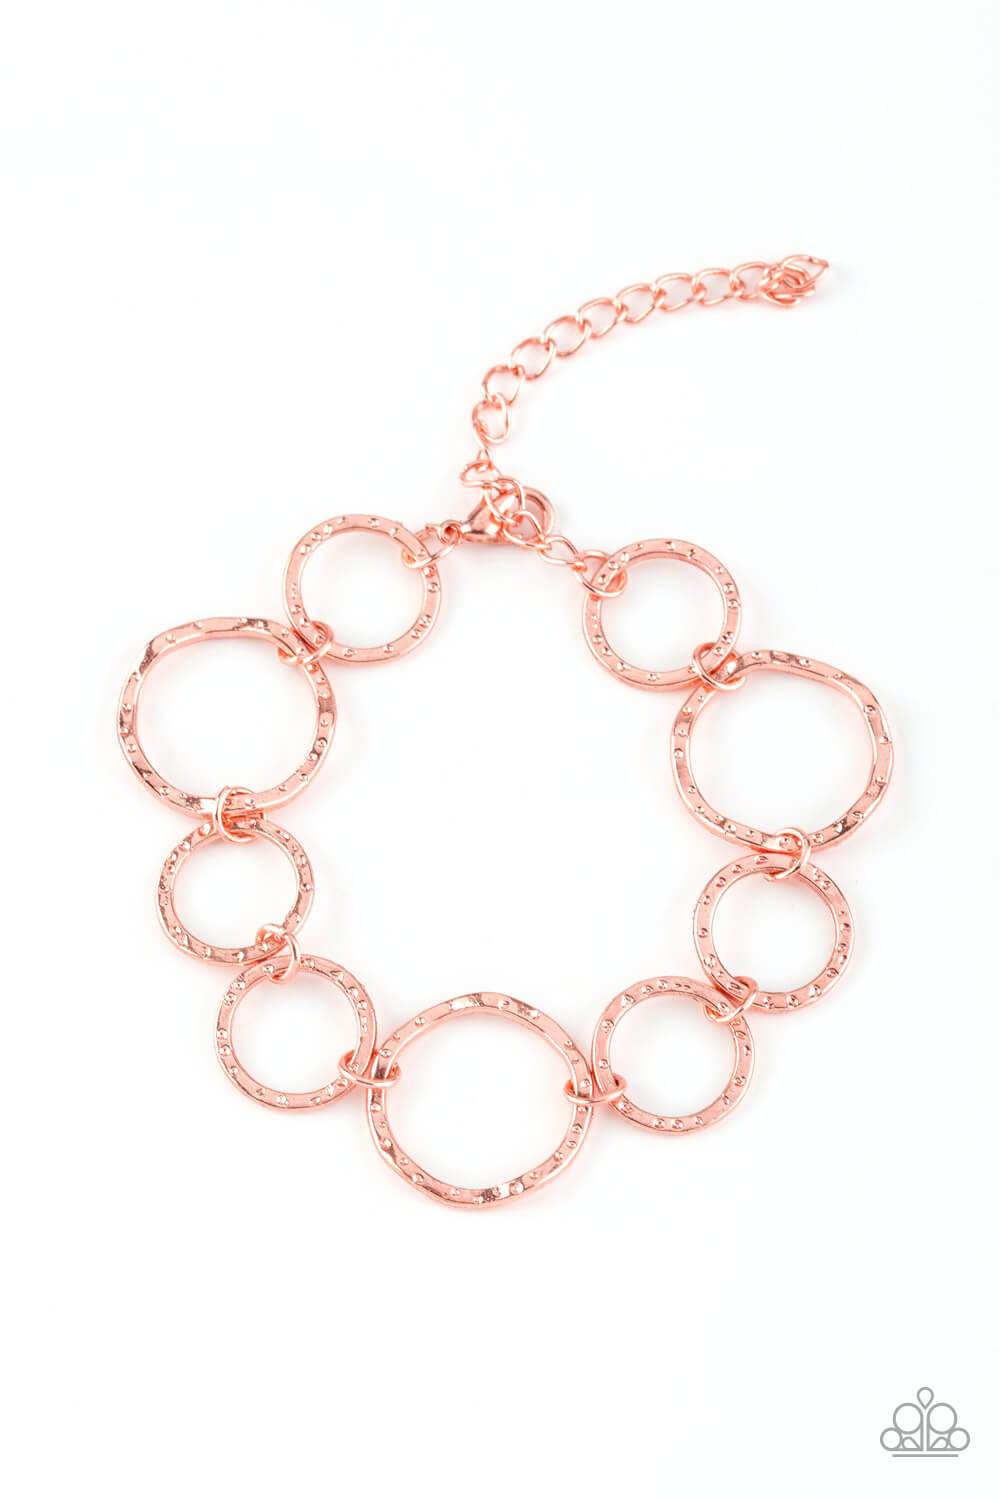 Circus Show - Copper Necklace Set & Bracelet Combo - Princess Glam Shop